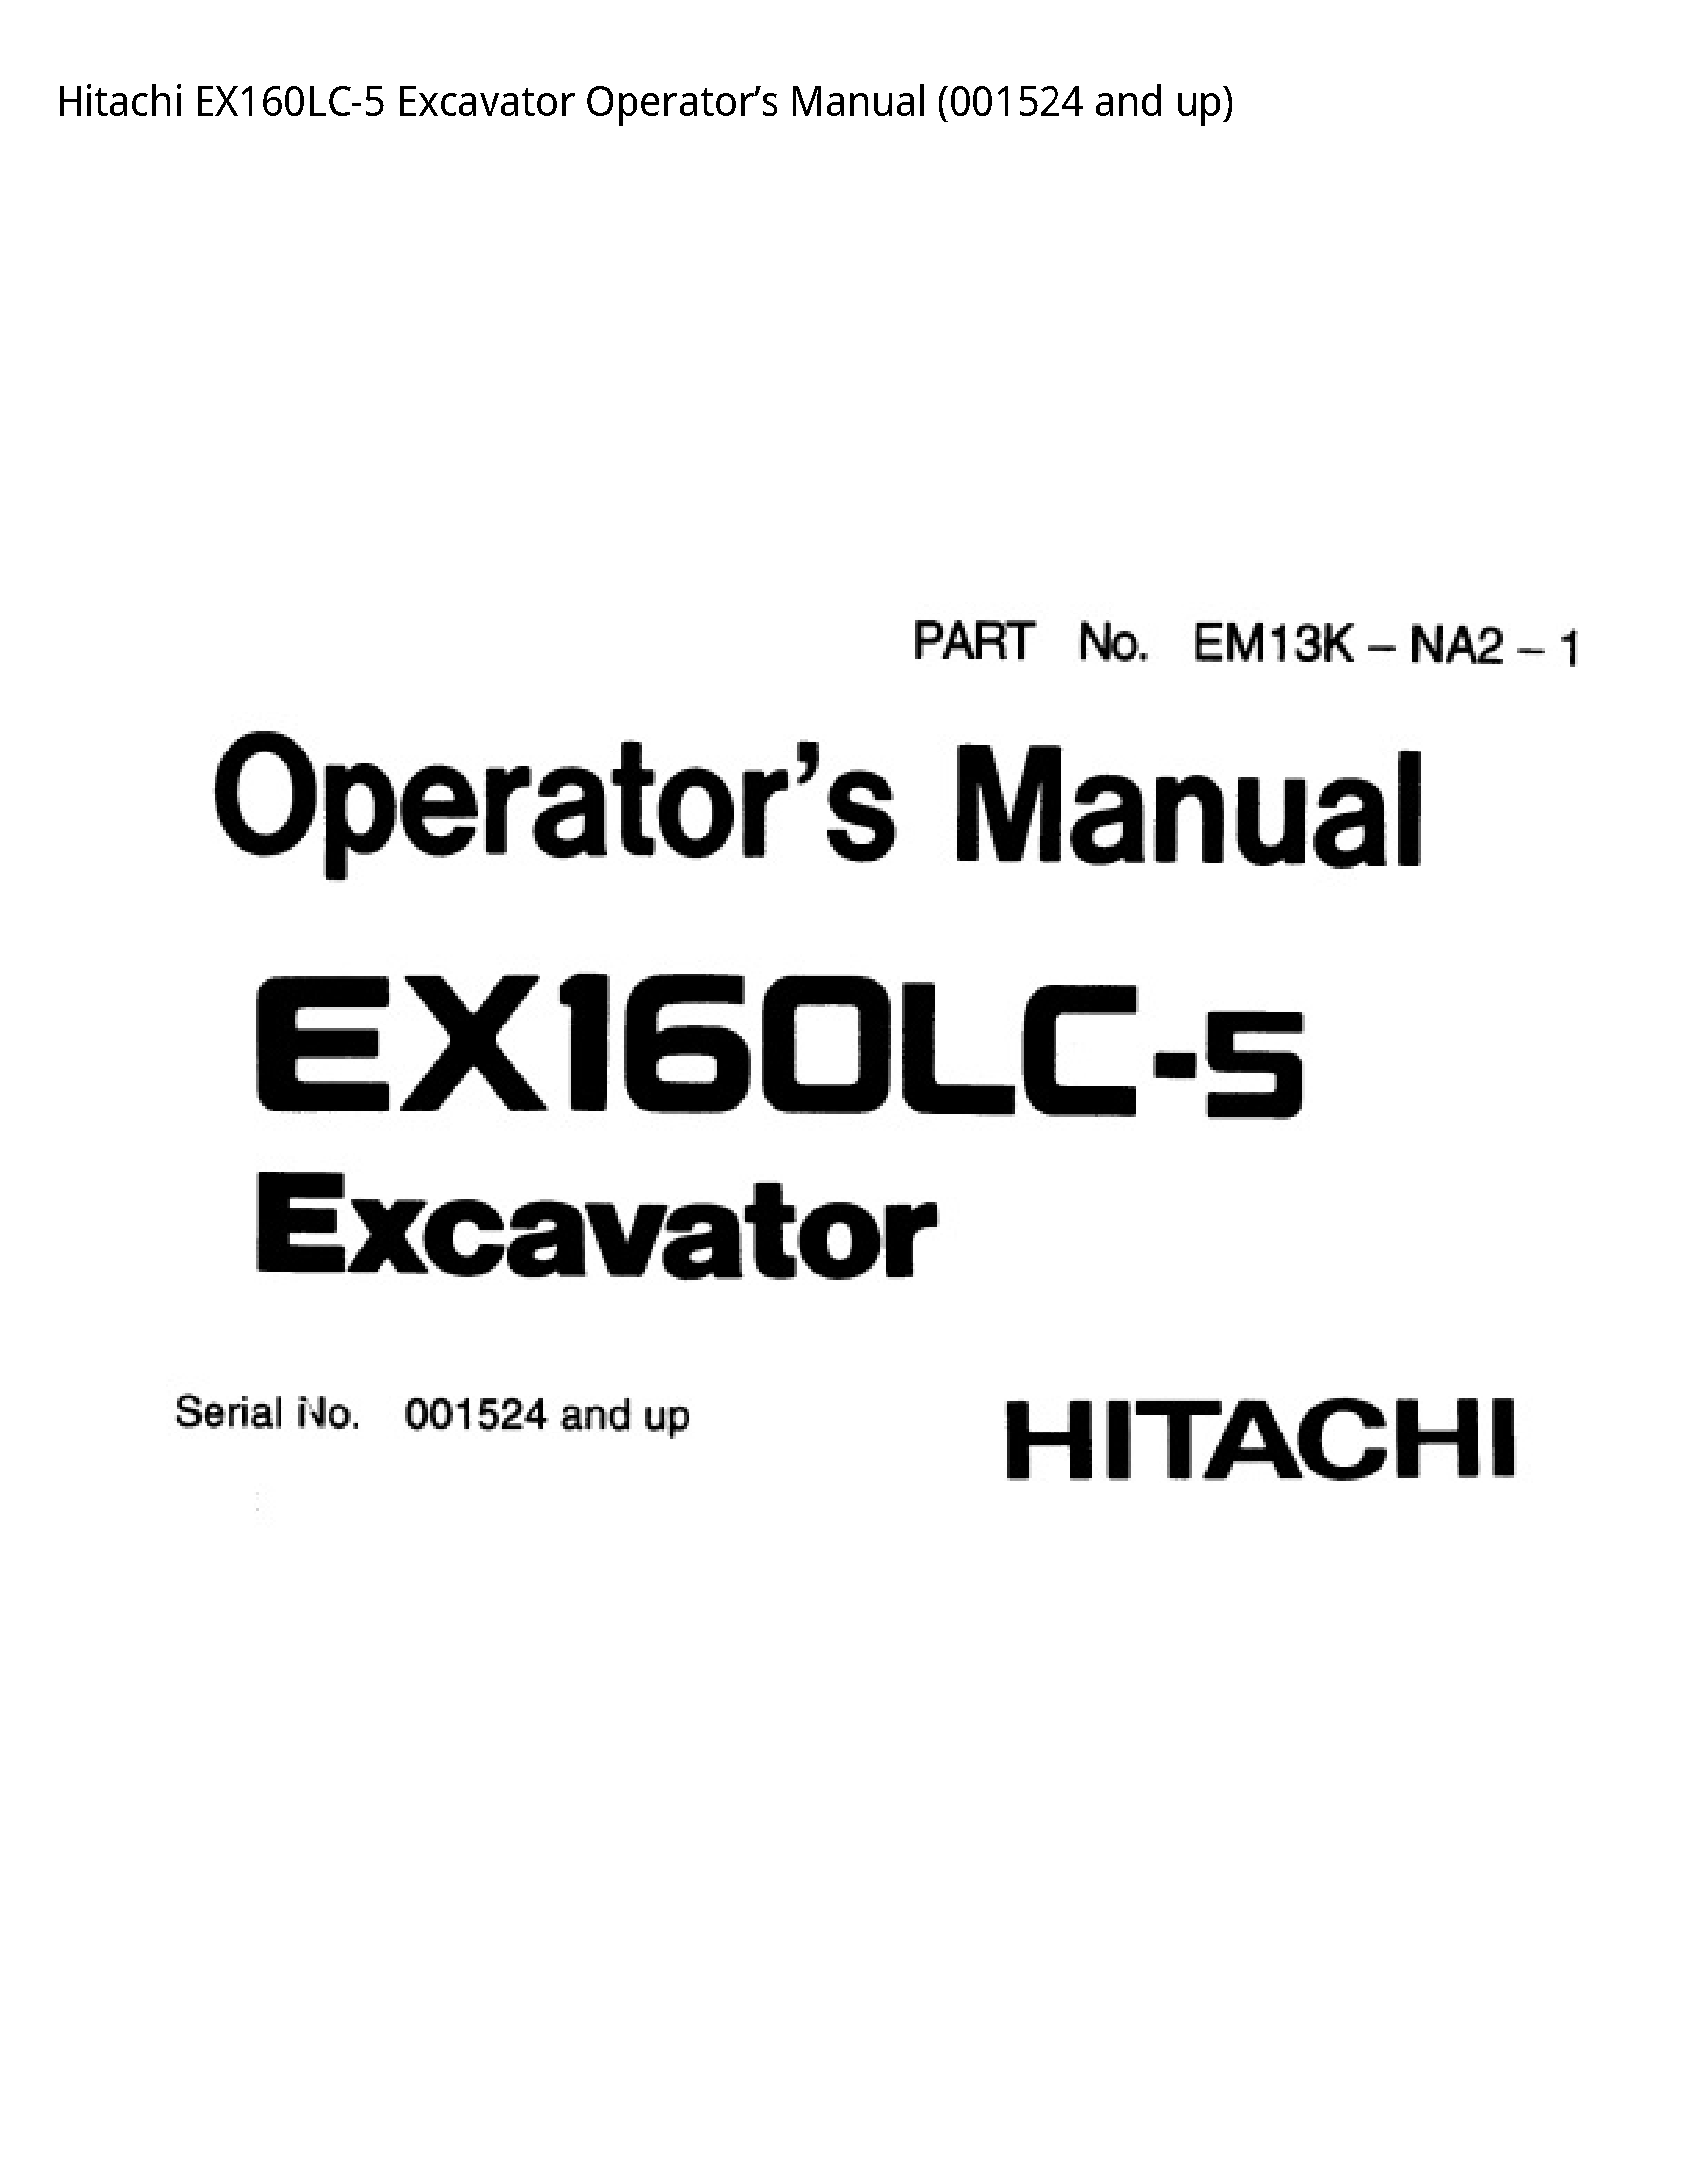 Hitachi EX160LC-5 Excavator Operator’s manual